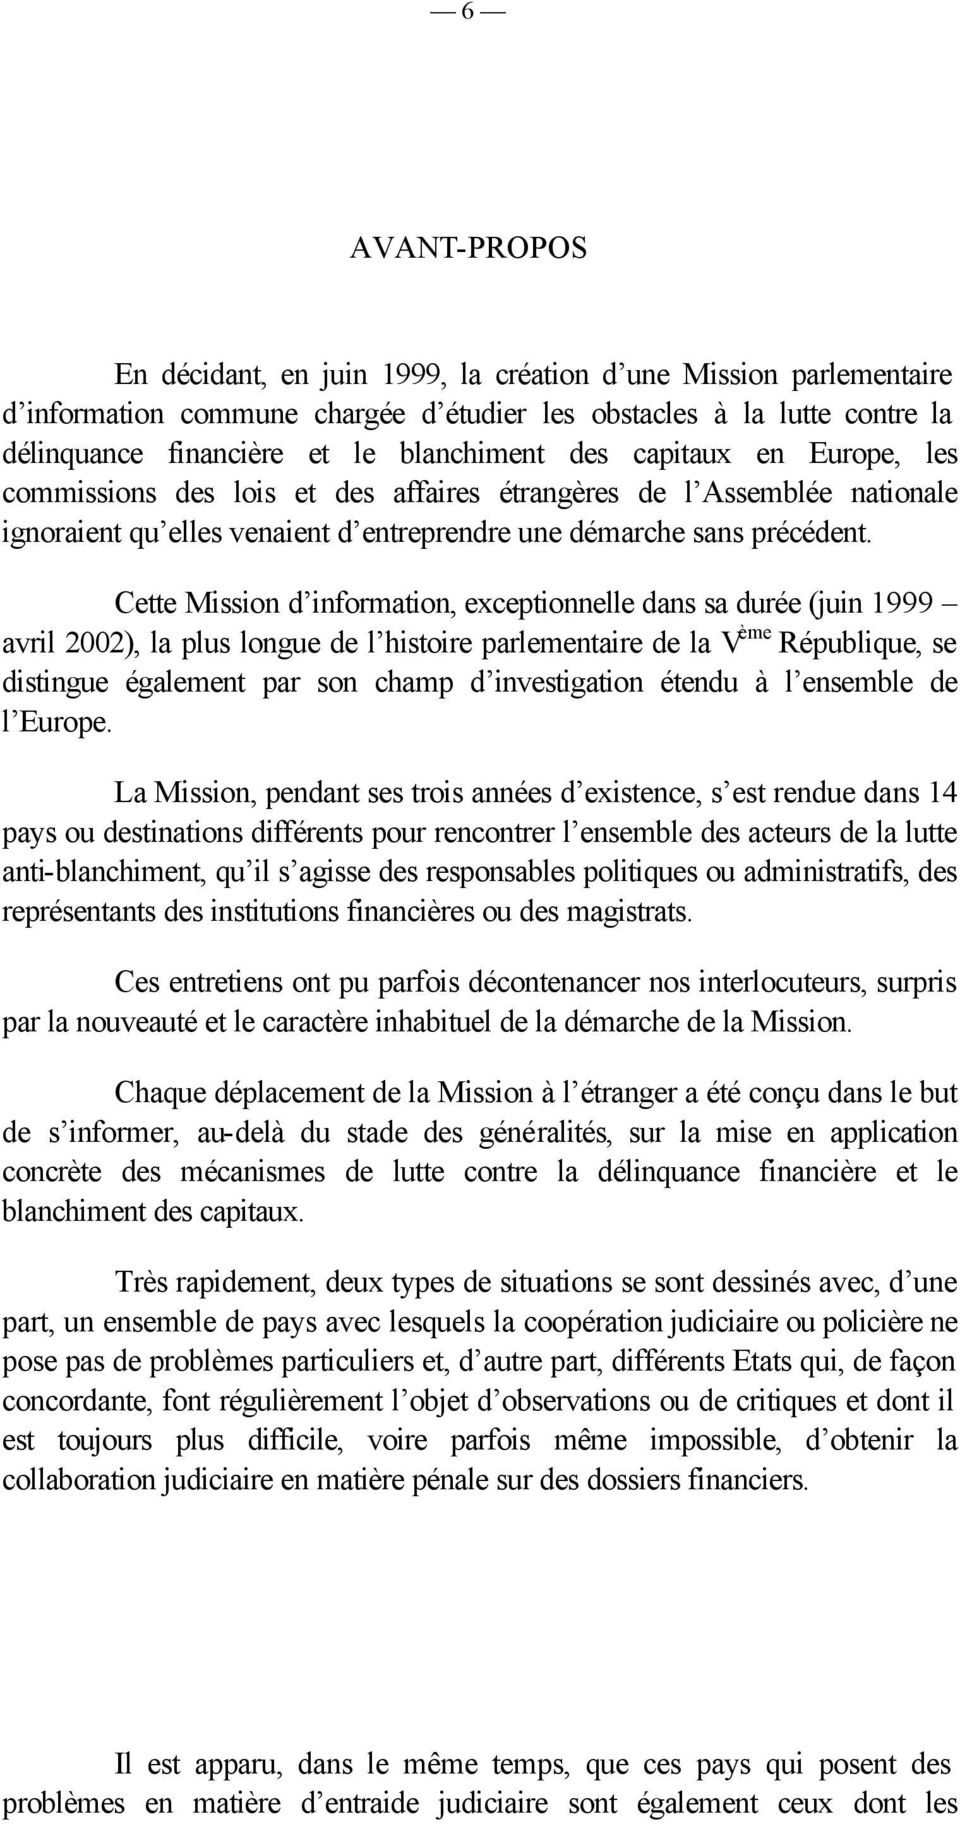 Cette Mission d information, exceptionnelle dans sa durée (juin 1999 avril 2002), la plus longue de l histoire parlementaire de la V ème République, se distingue également par son champ d